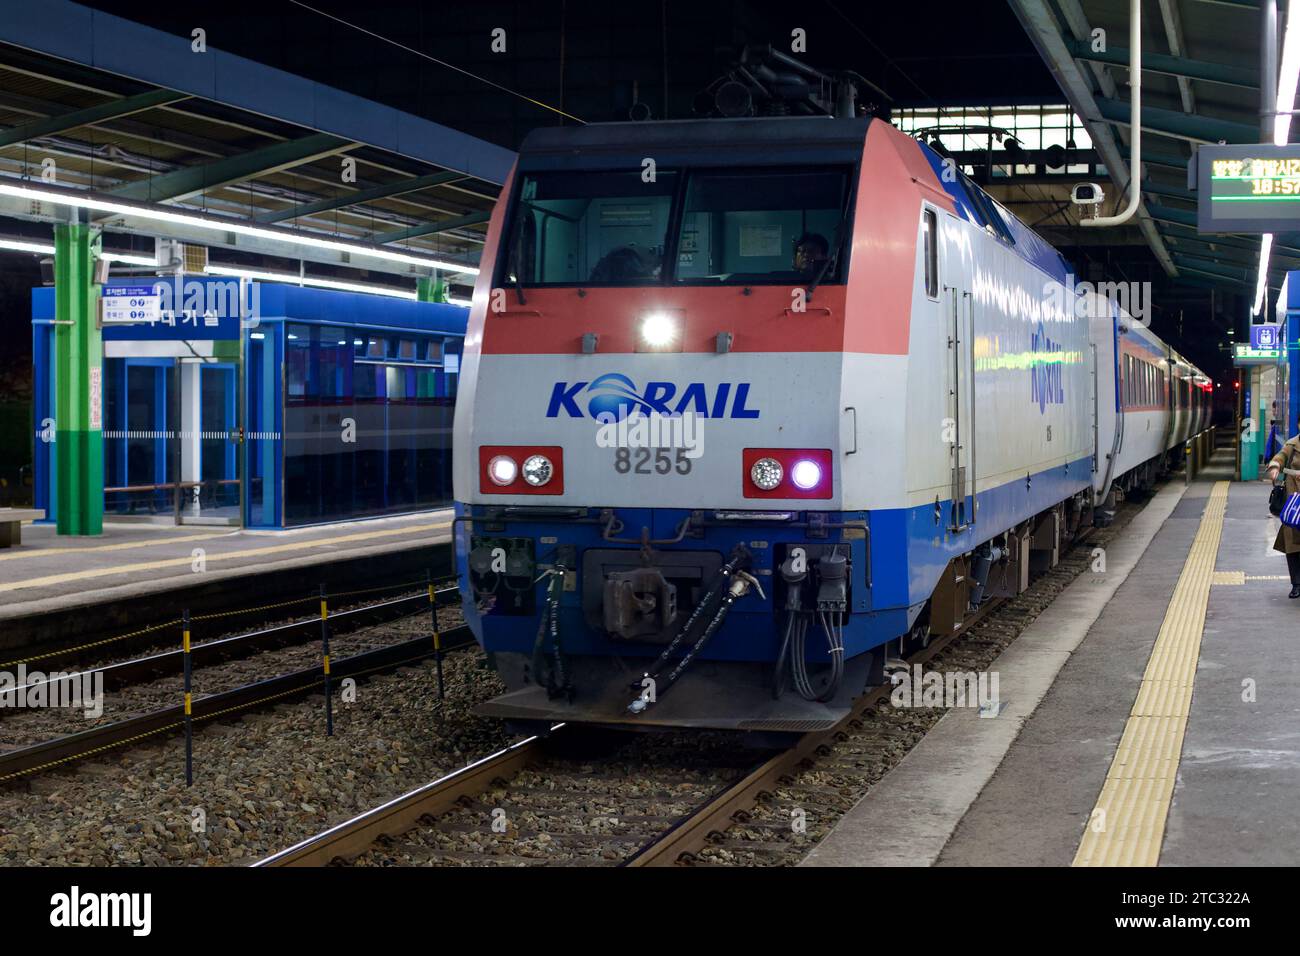 Der Zug Korail Mugunghwa nähert sich einem Bahnhof, dessen Ankunft die nahtlose Mischung aus Südkoreas effizientem Reisenetz und moderner Mobilität darstellt. Stockfoto